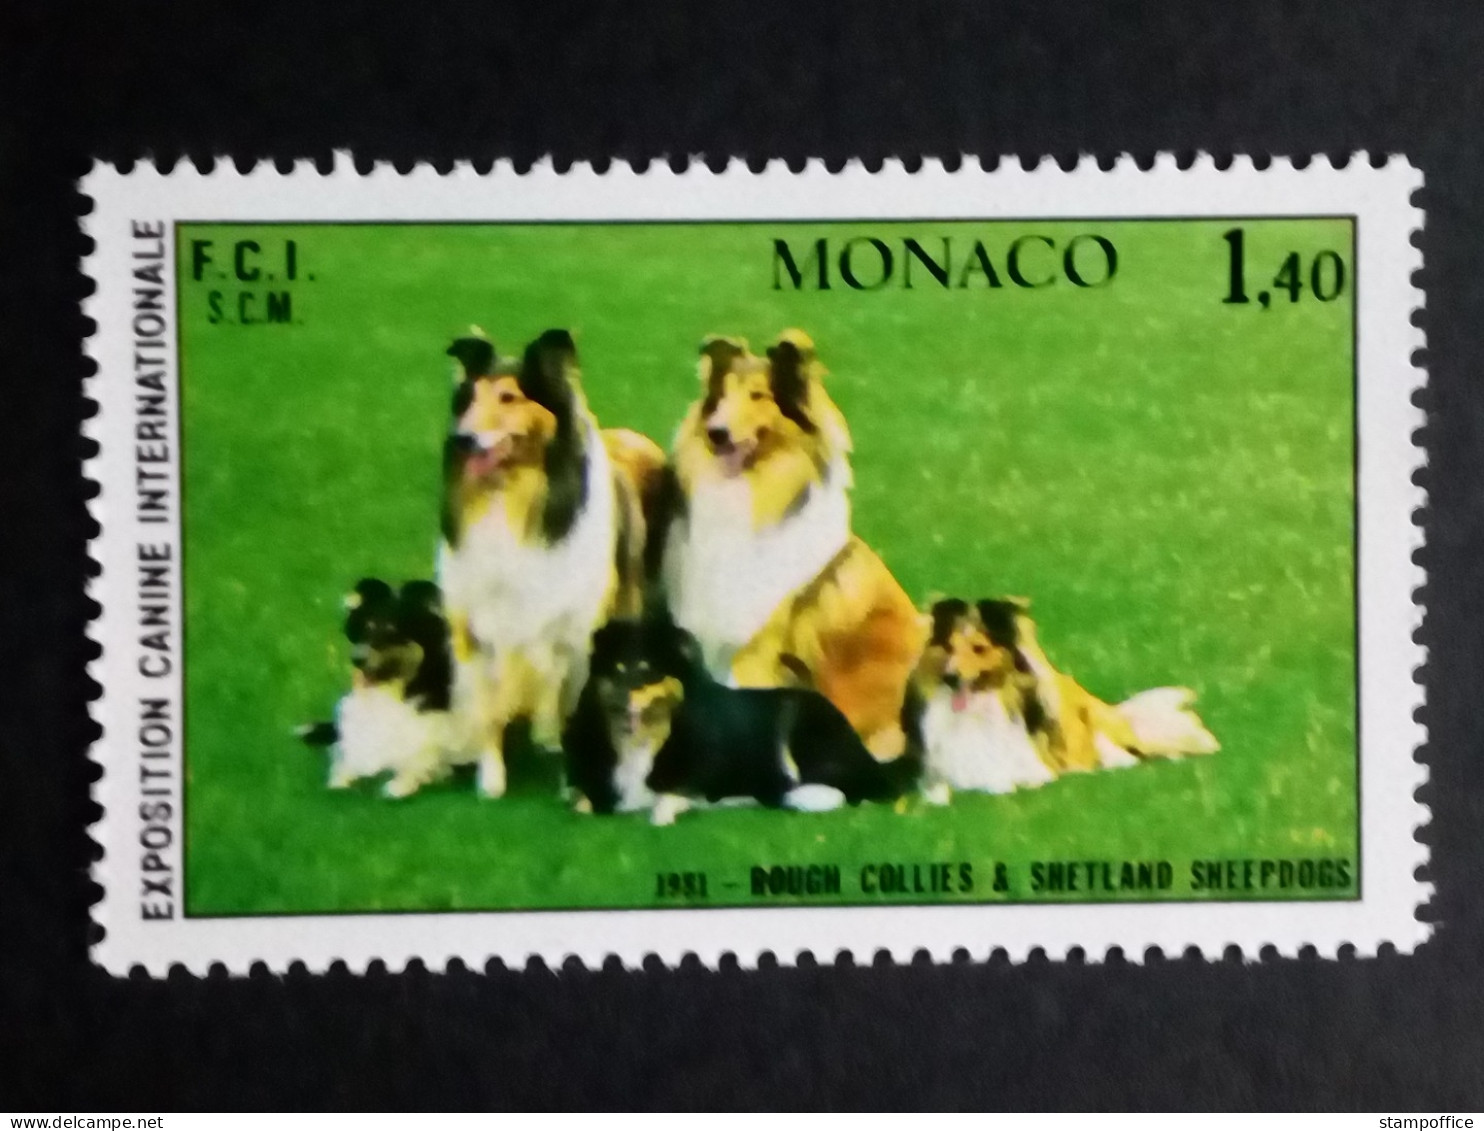 MONACO MI-NR. 1480 POSTFRISCH(MINT) HUNDEAUSSTELLUNG MONTE CARLO 1981 COLLIE - Honden